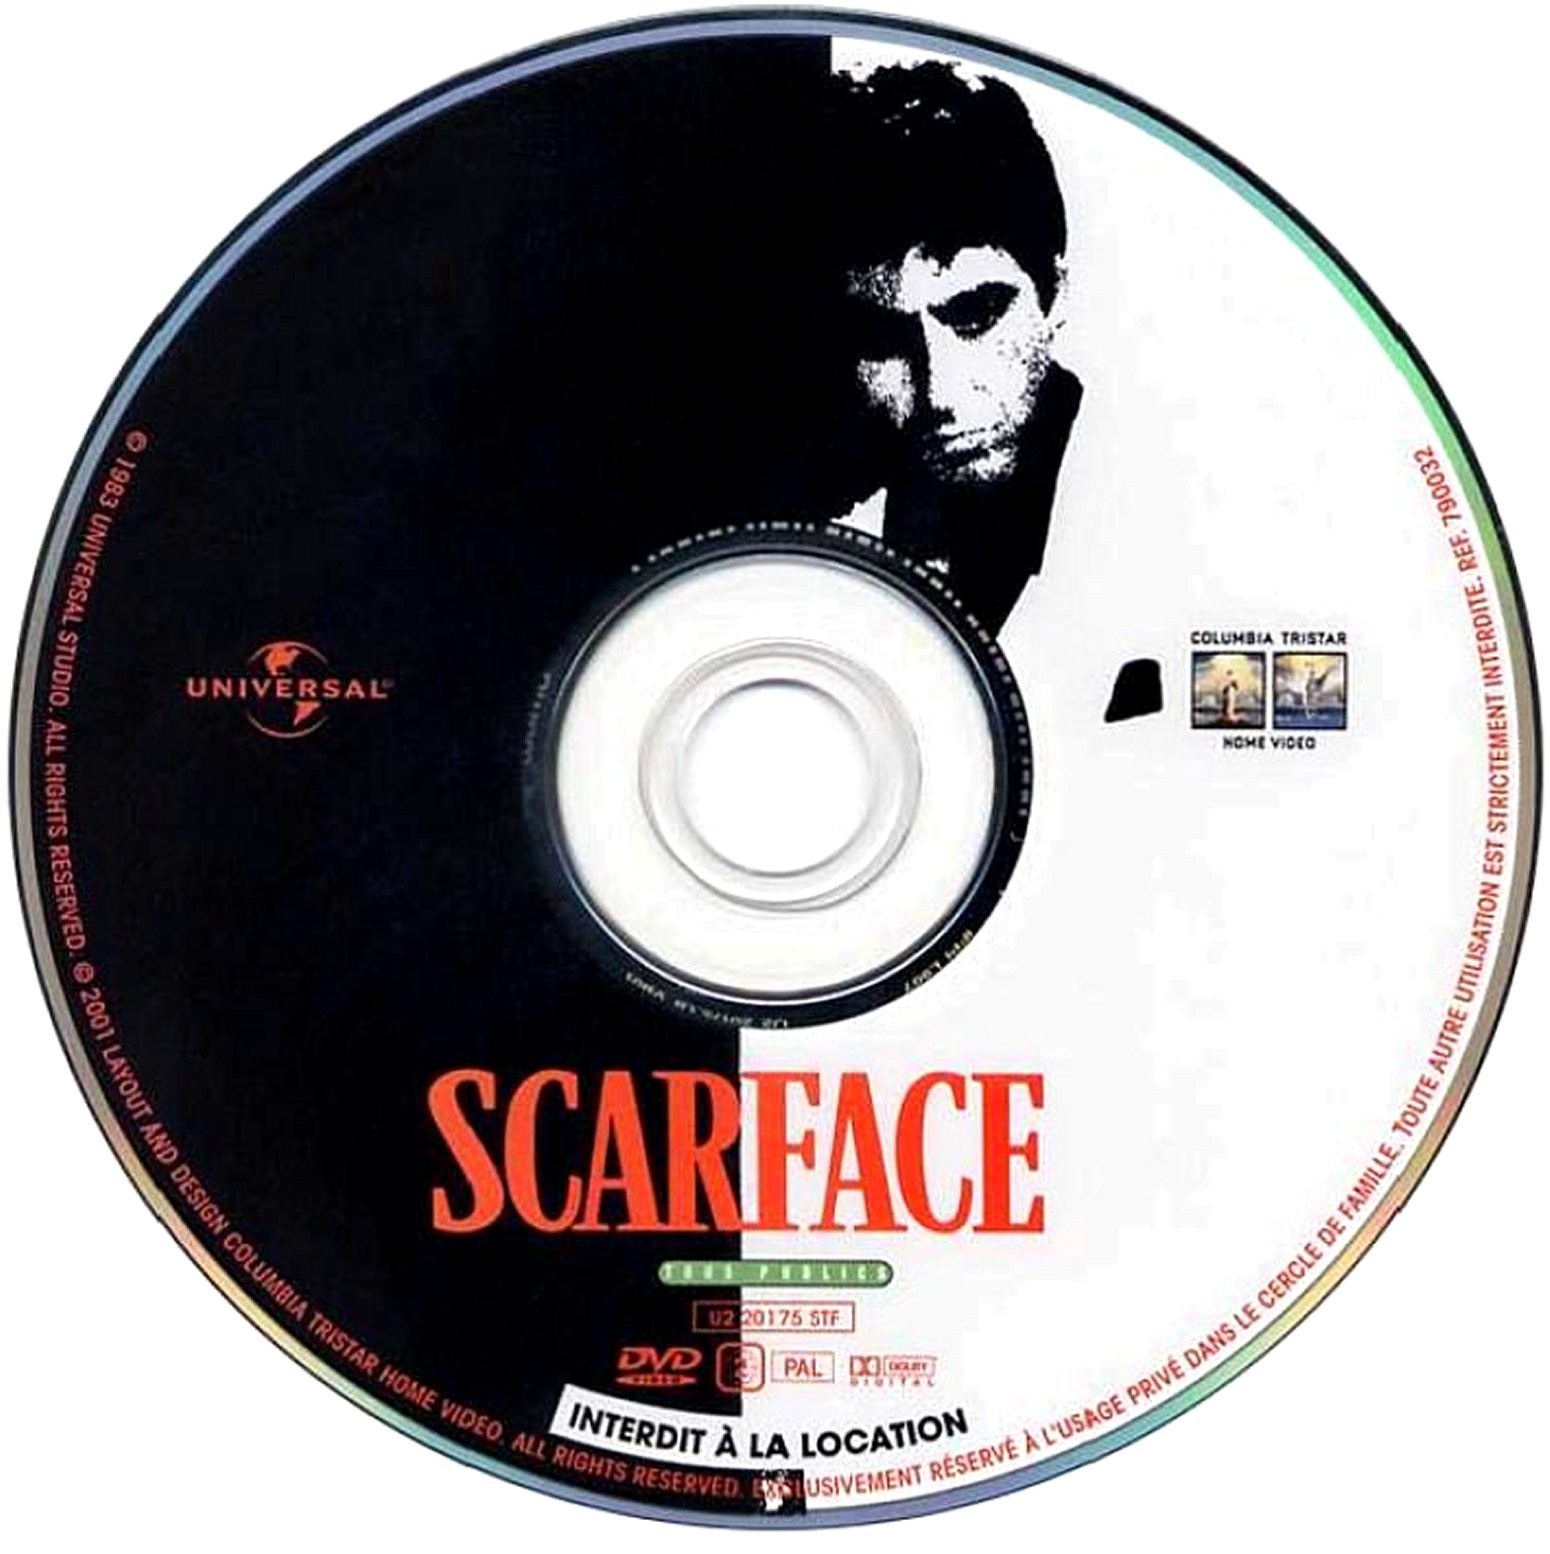 Scarface v2